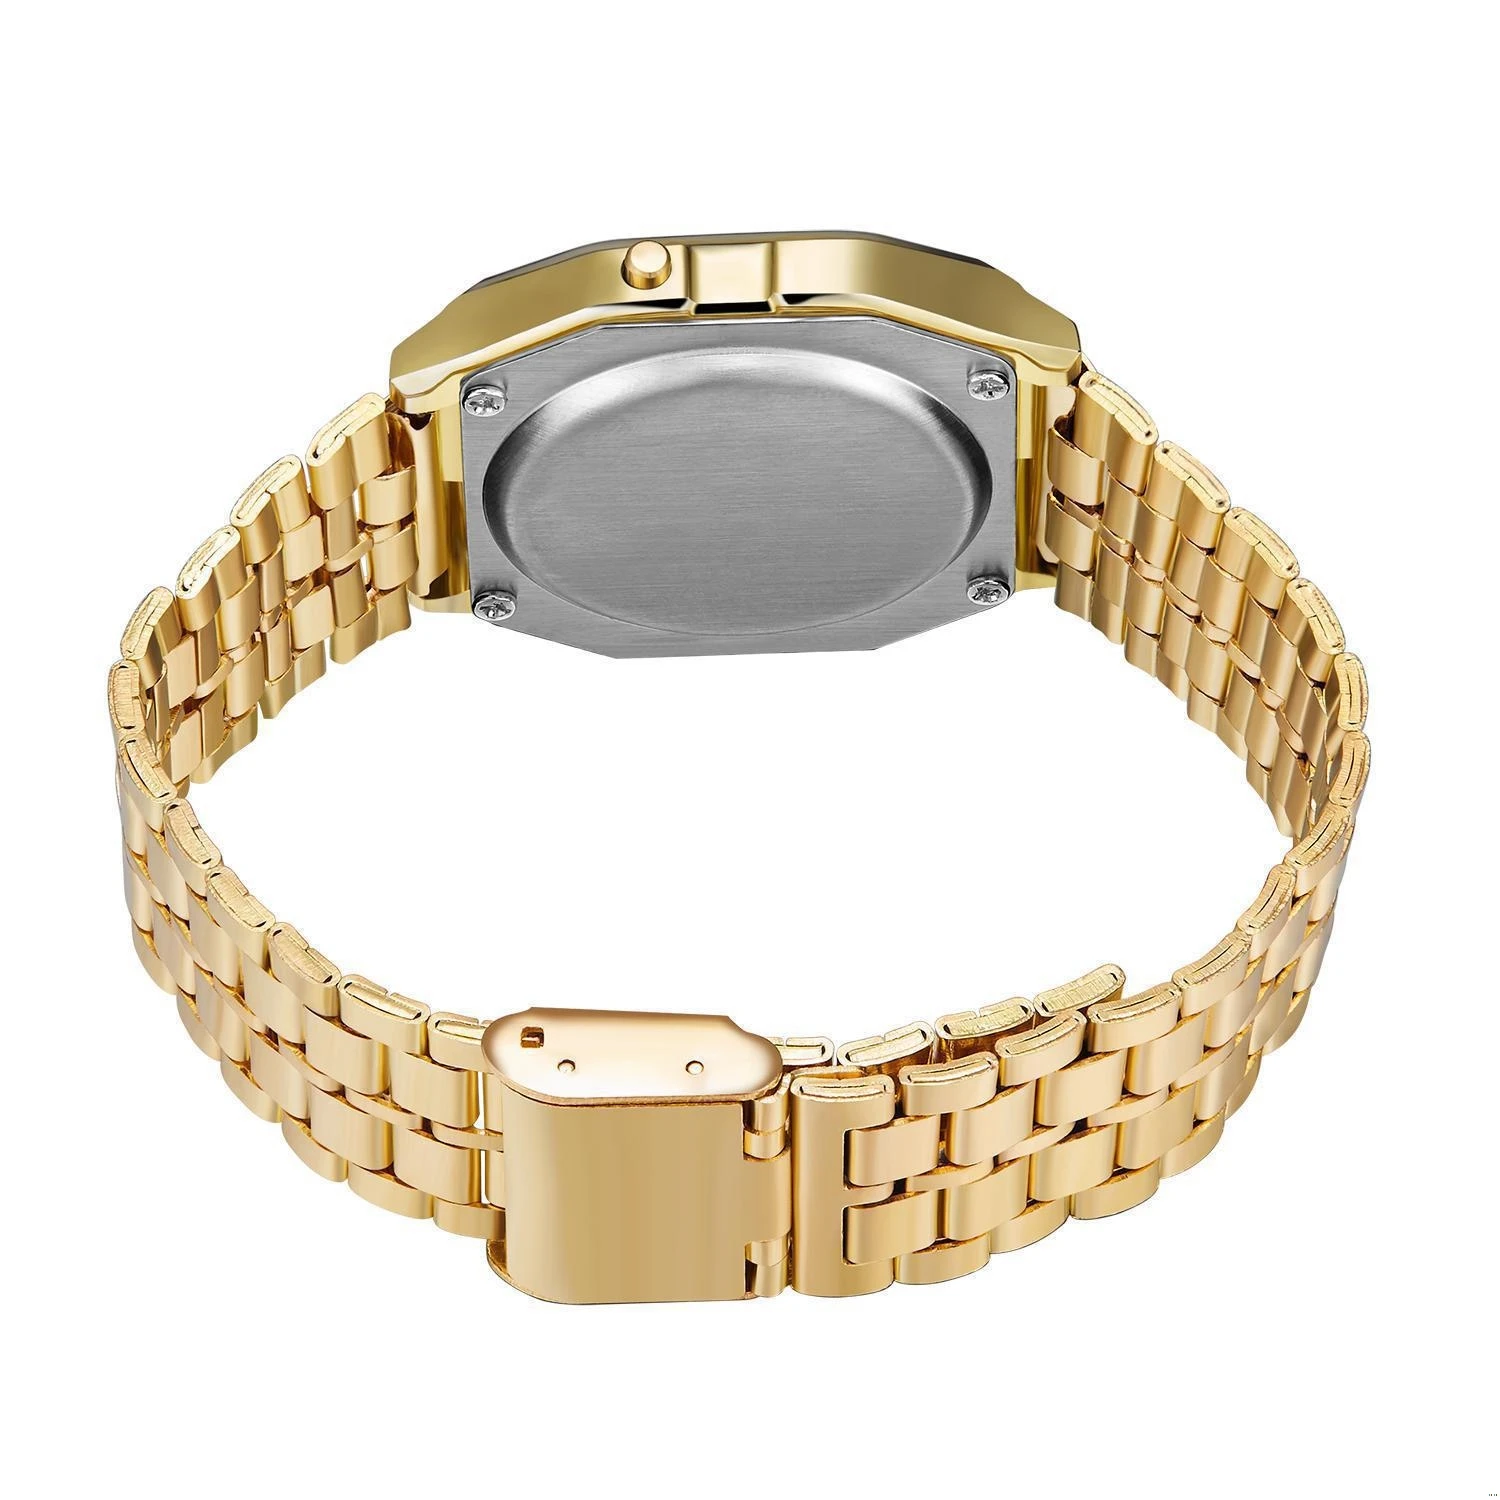 Montre F-91W pour hommes Vintage LED numérique sport militaire montres électroniques femmes montre-bracelet bande horloge montre-bracelet pour femmes Reloj